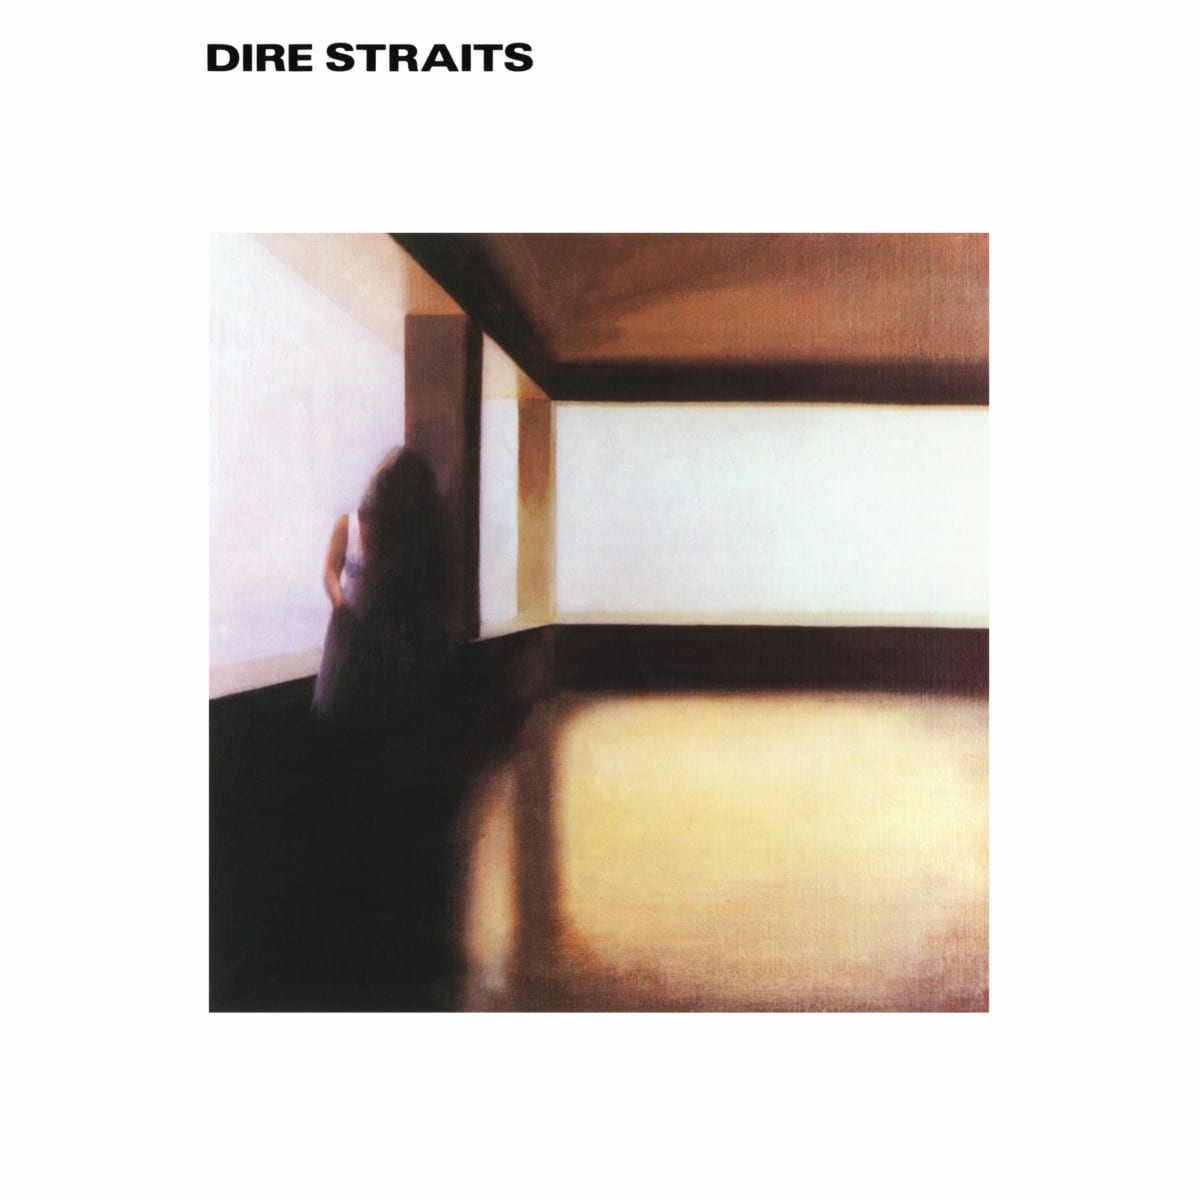 DIRE STRAITS (1978) – El principio de la gloria